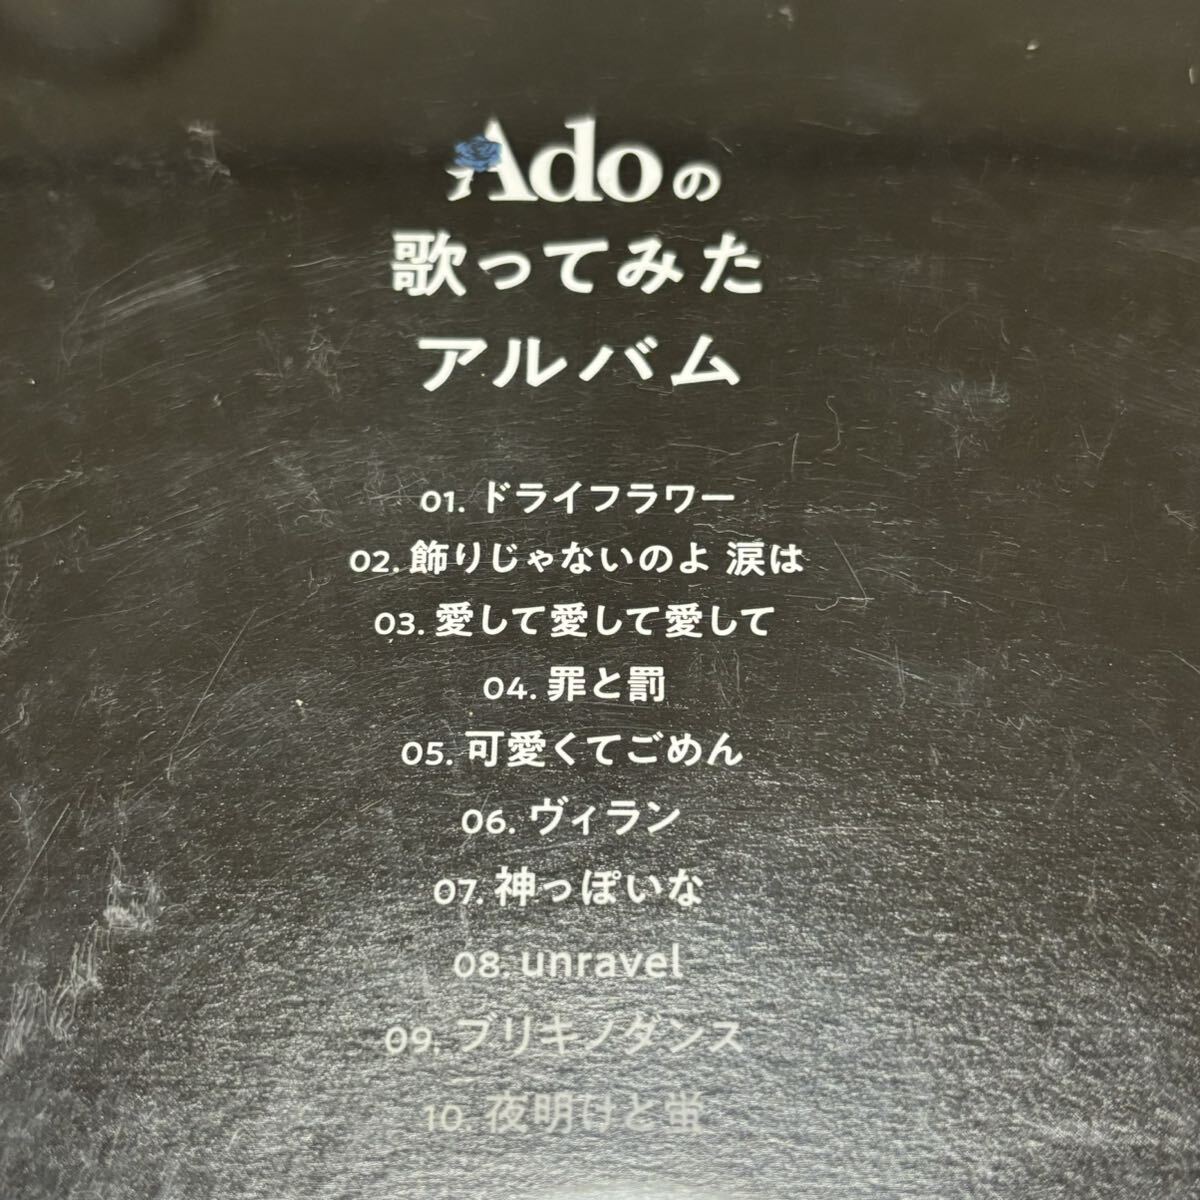 Adoの歌ってみたアルバム CD 通常盤 Ado アルバム 1度だけ使用 中古品 【0323】_画像3